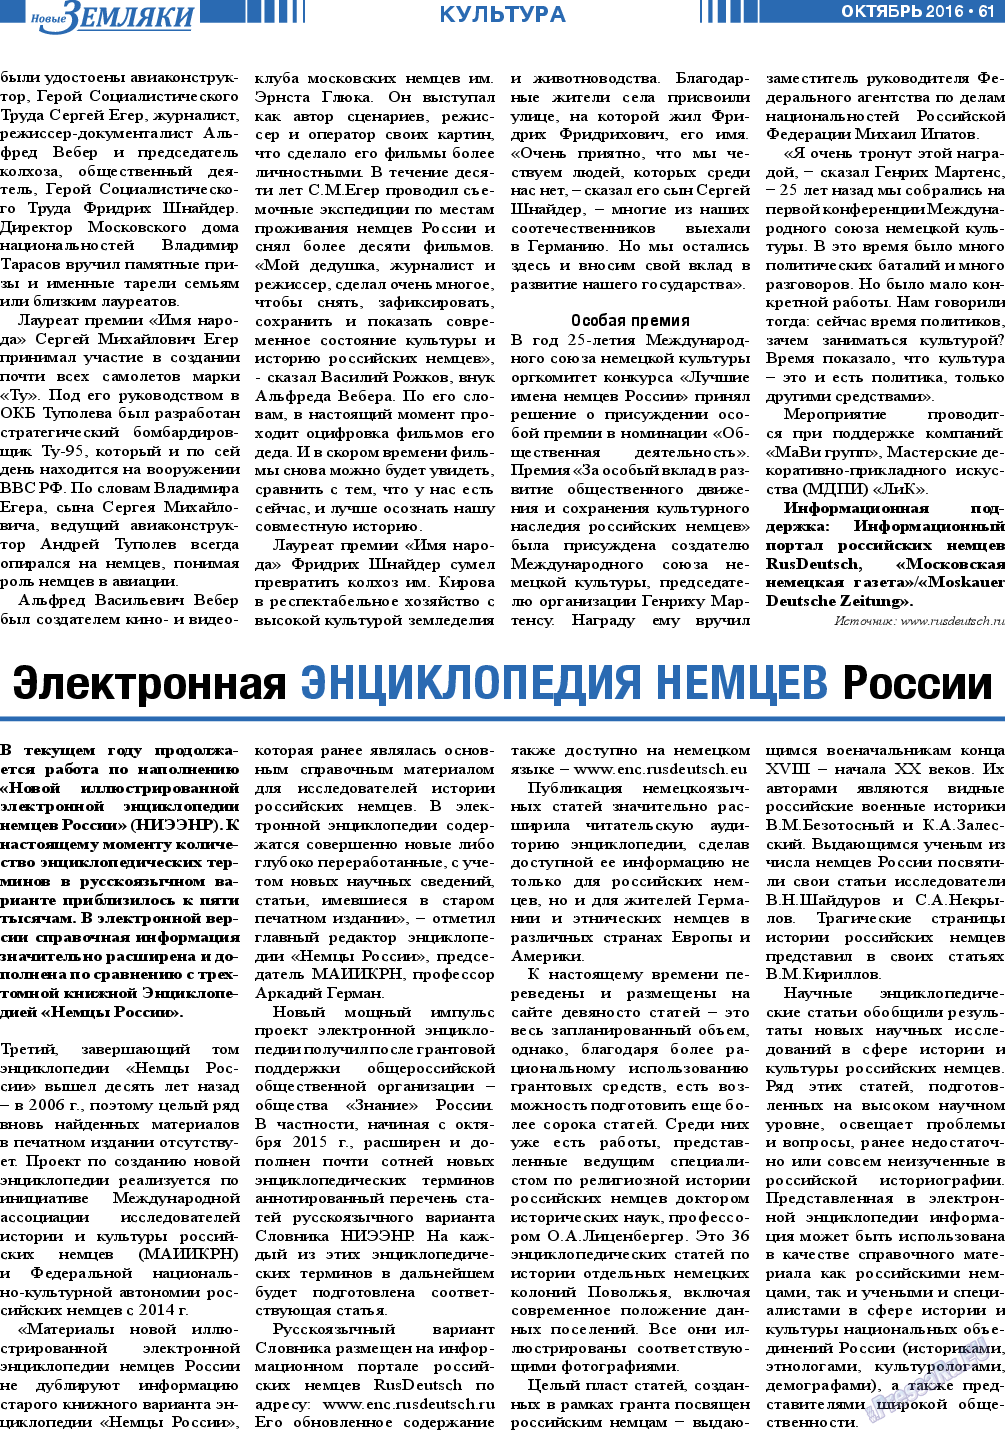 Новые Земляки, газета. 2016 №10 стр.61